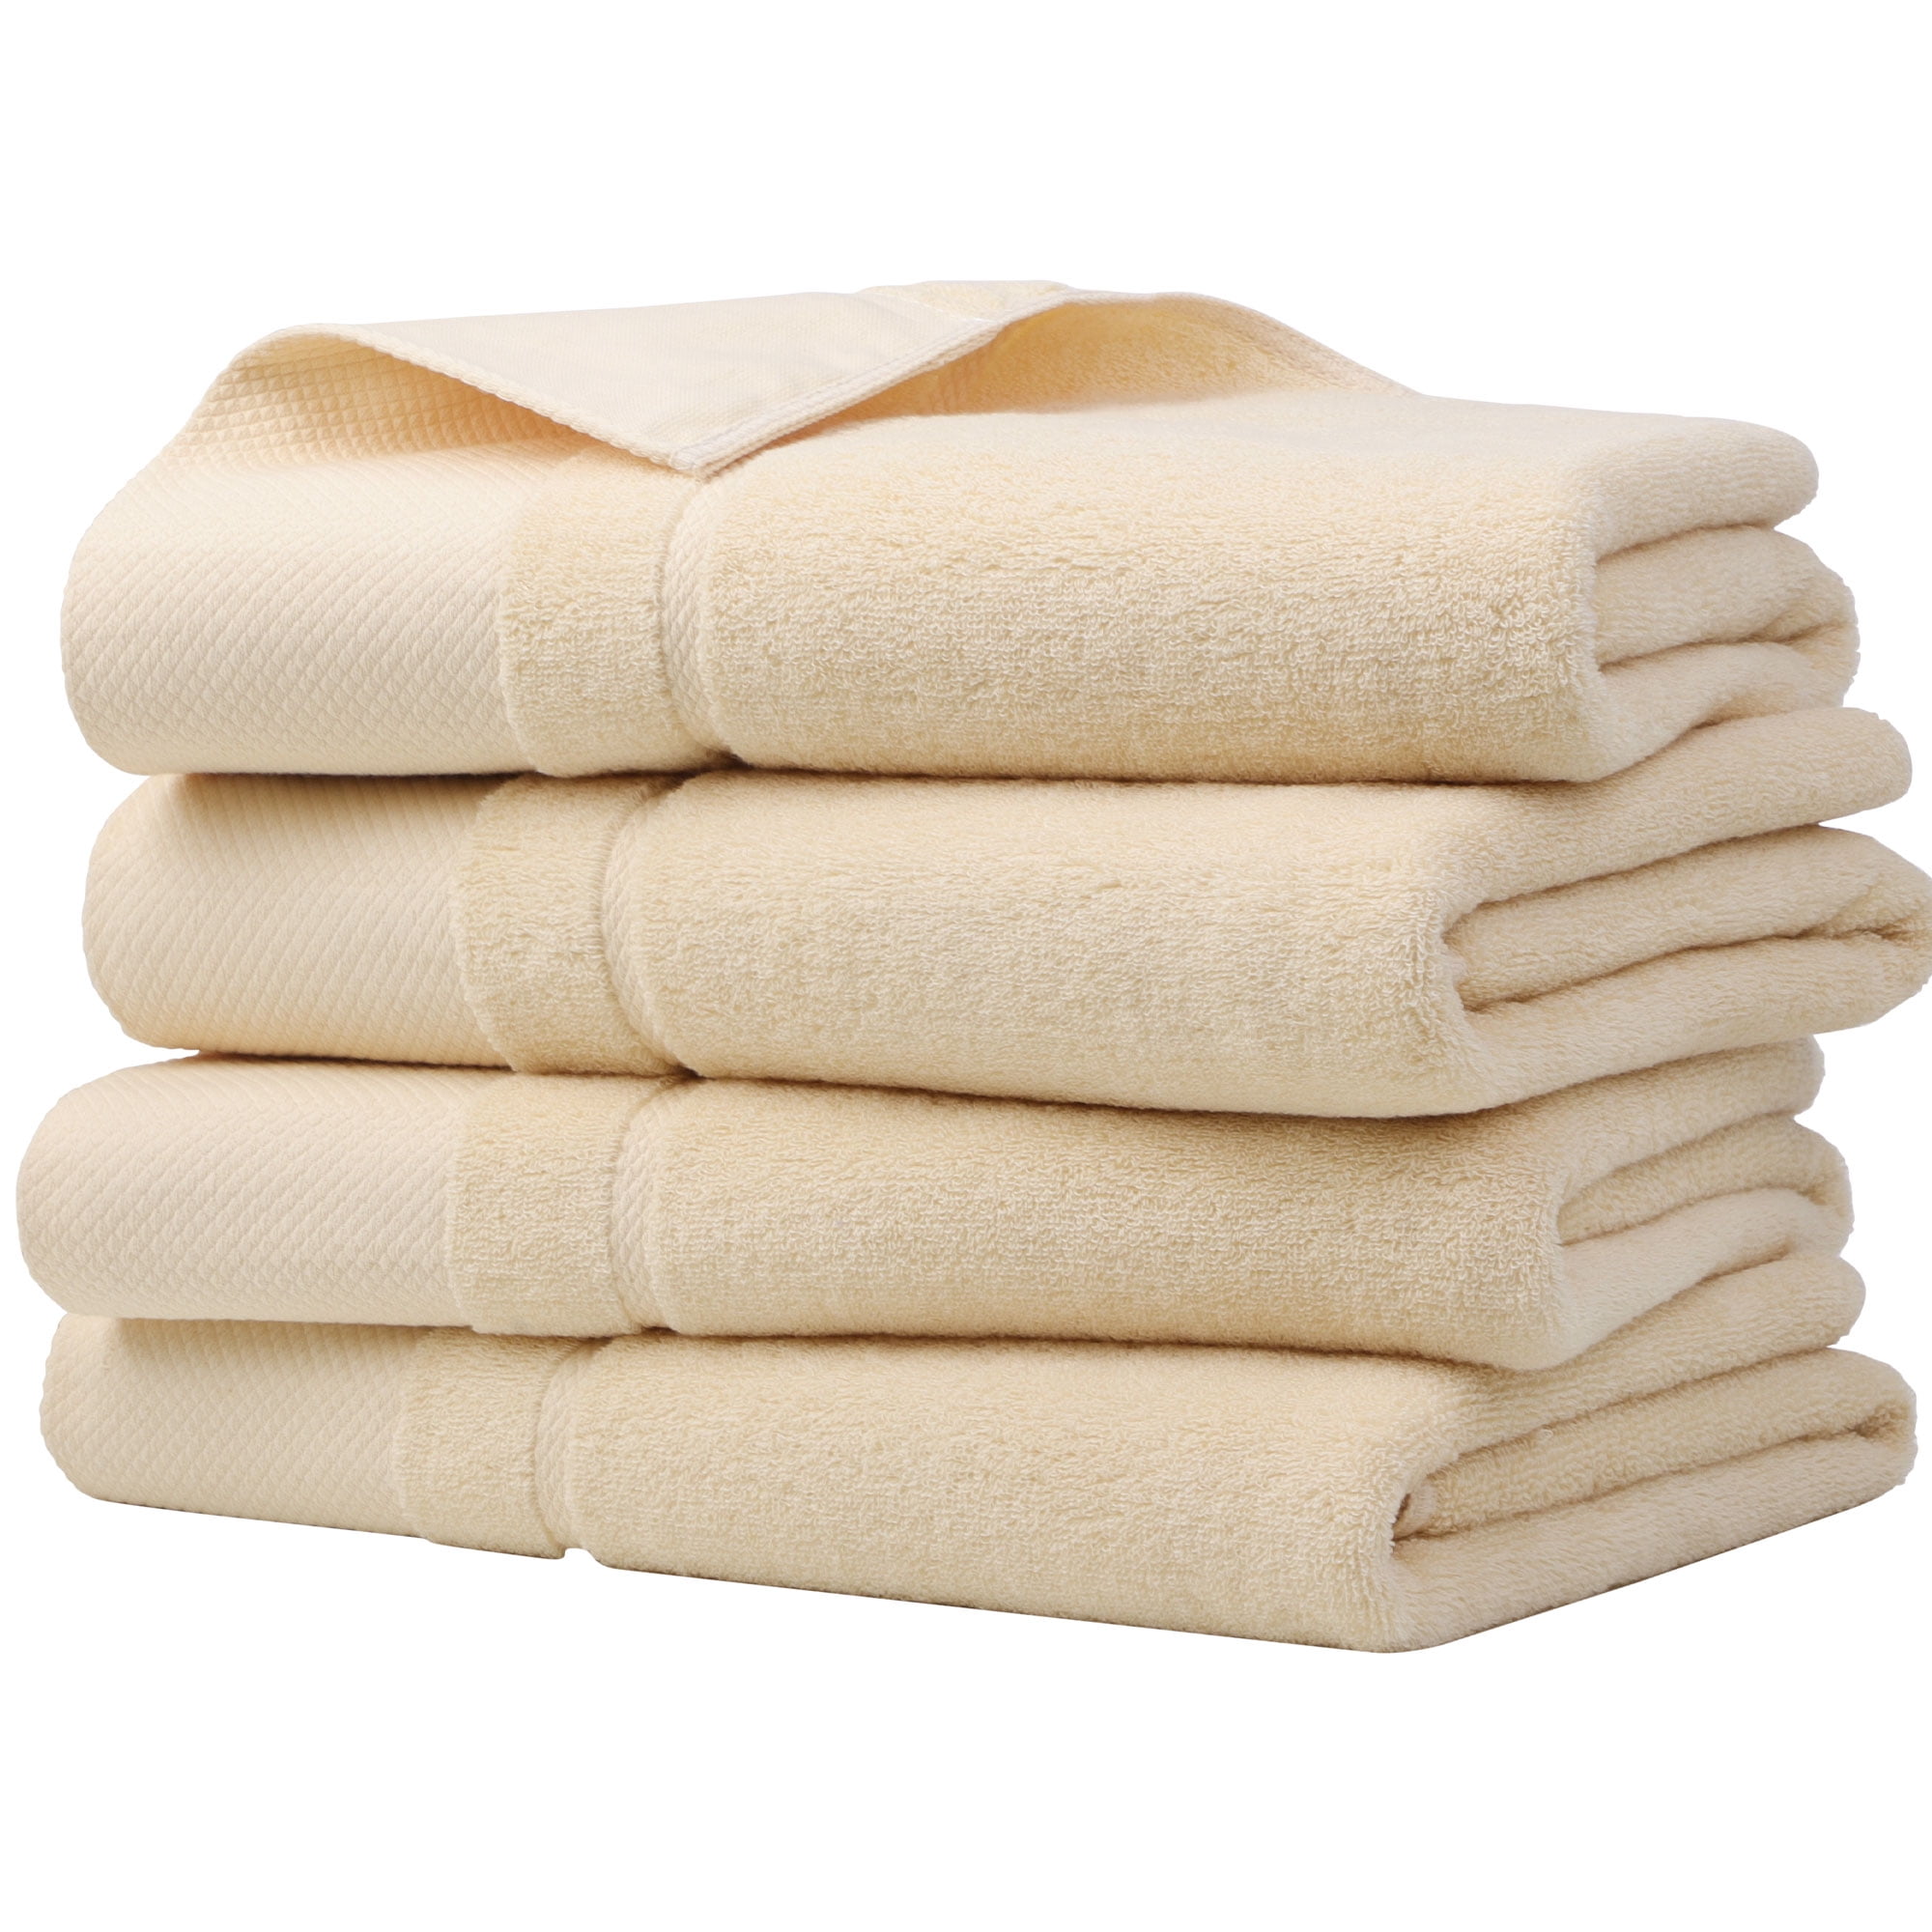 Unique Bargains 100% Cotton Absorbent Bath Towel Set 27x54 Beige 2 Pcs(Champagne/4 Pcs)